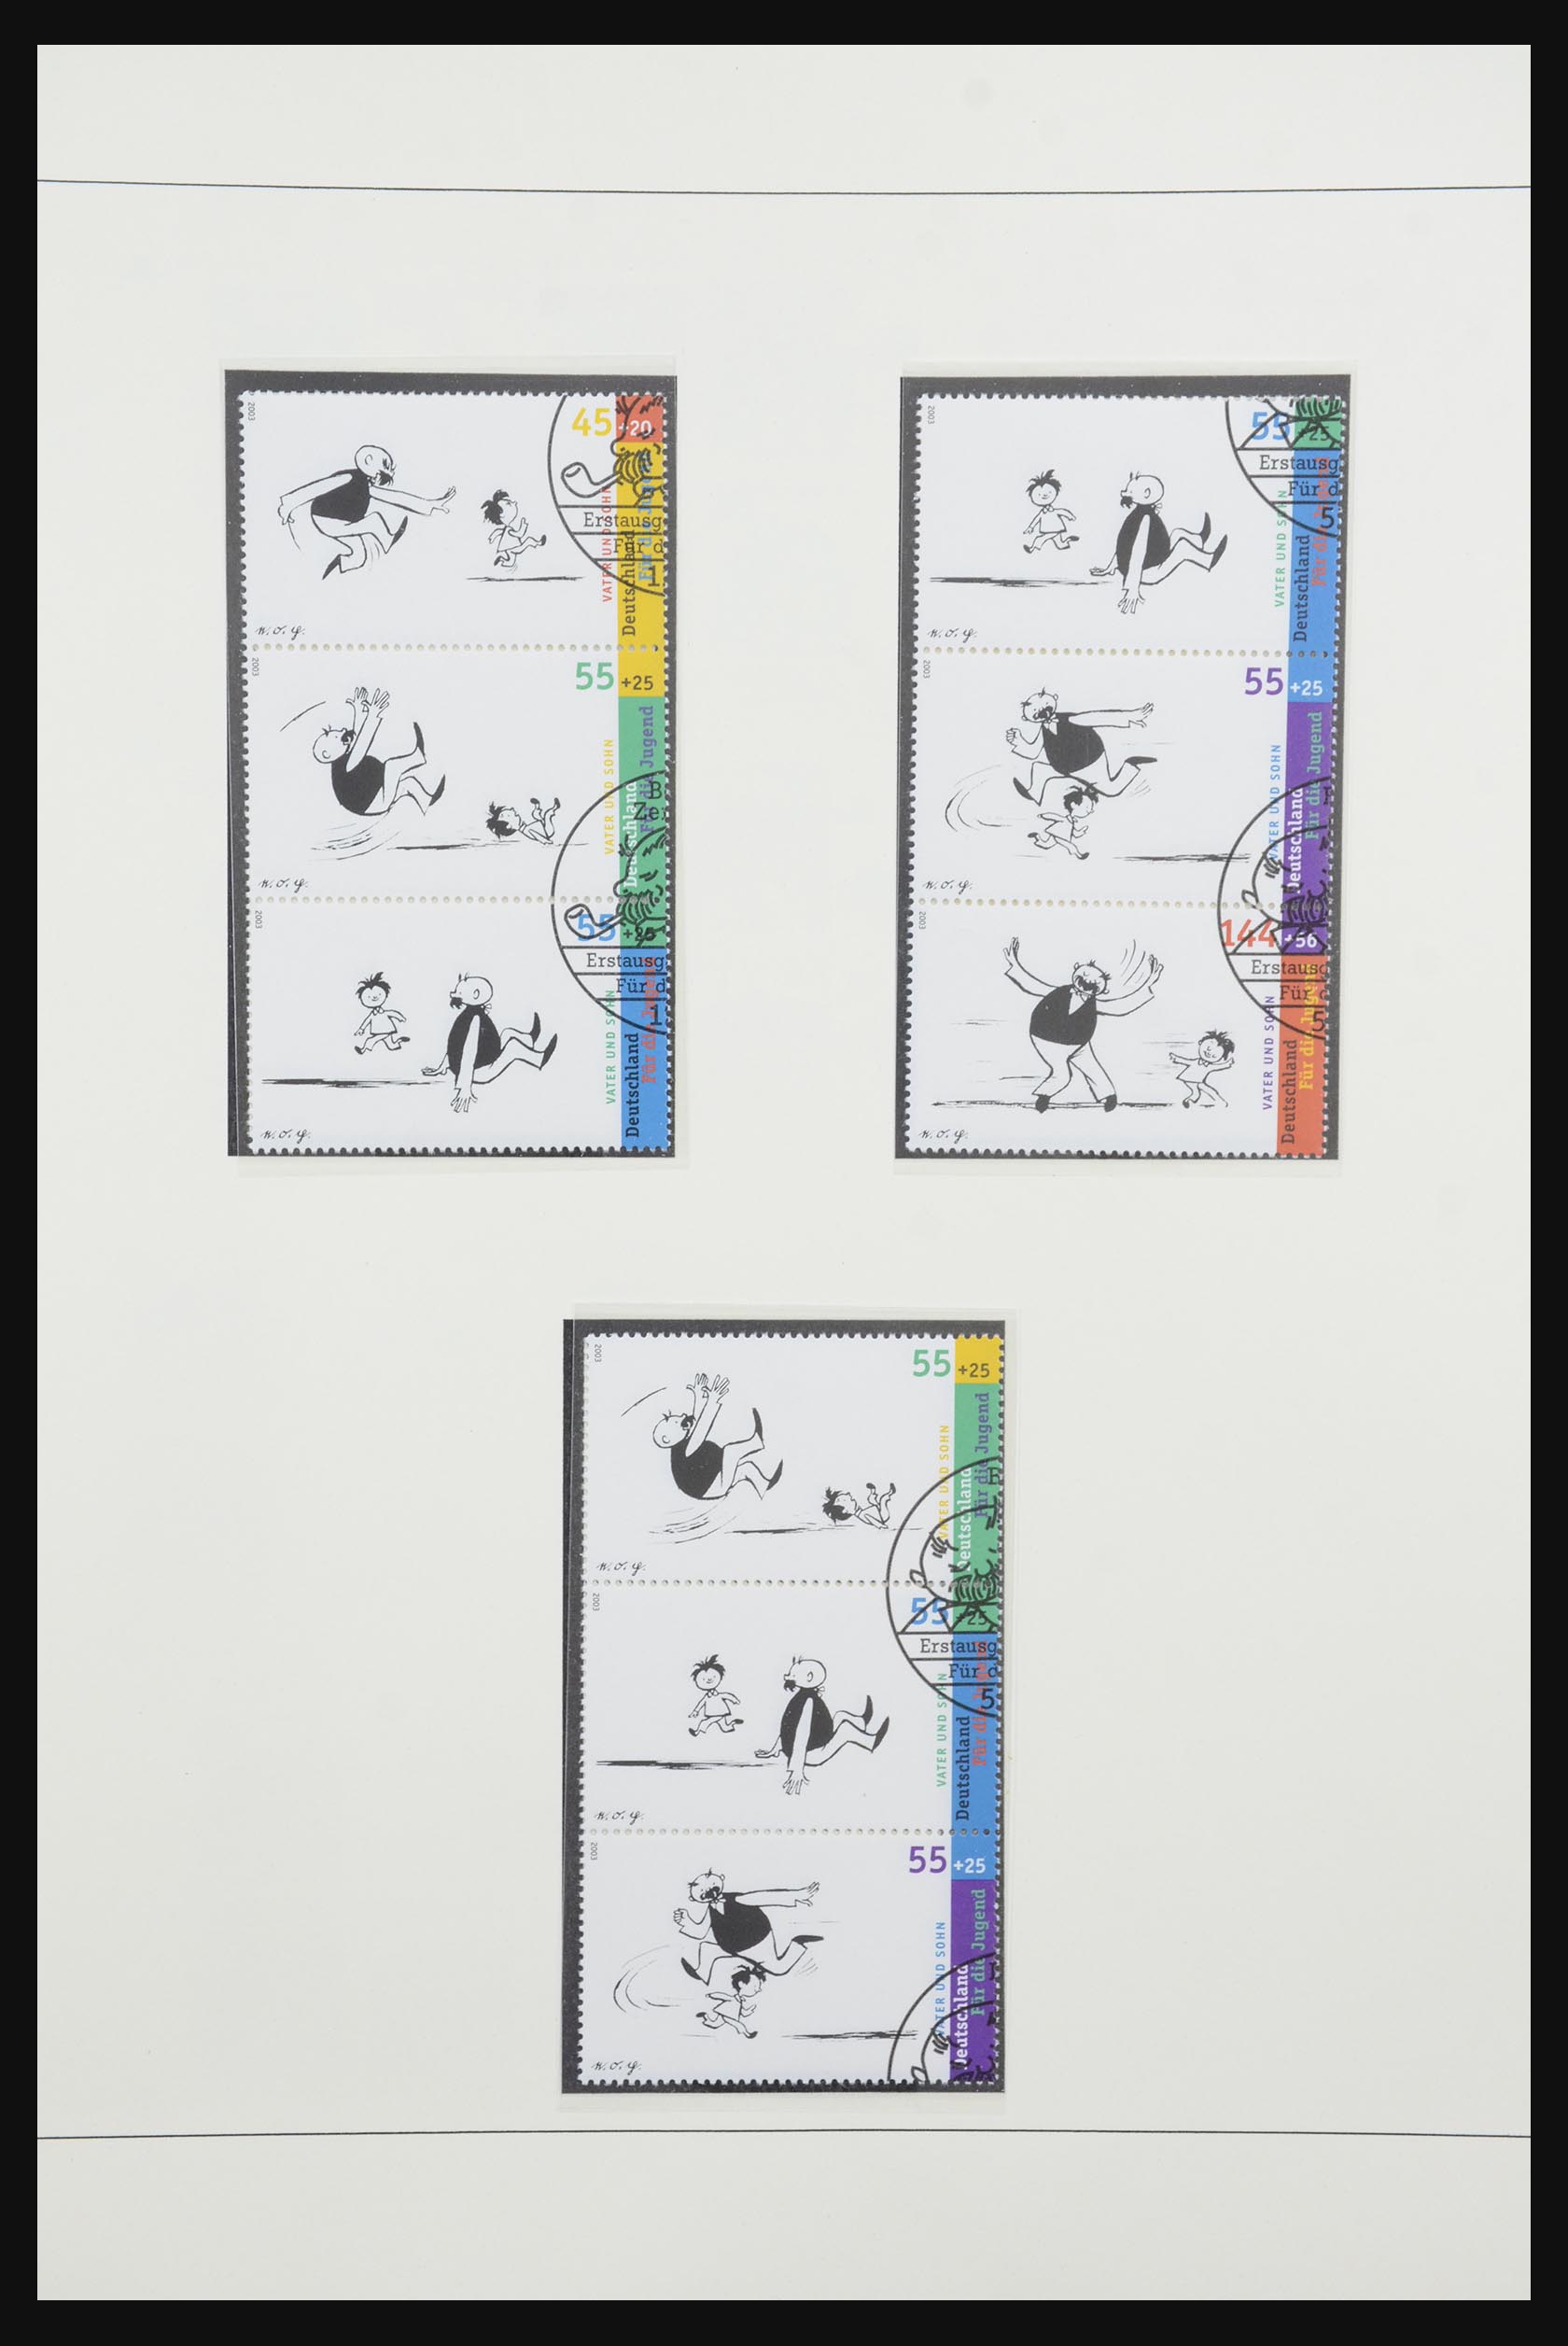 31842 085 - 31842 Bundespost combinations 1951-2003.